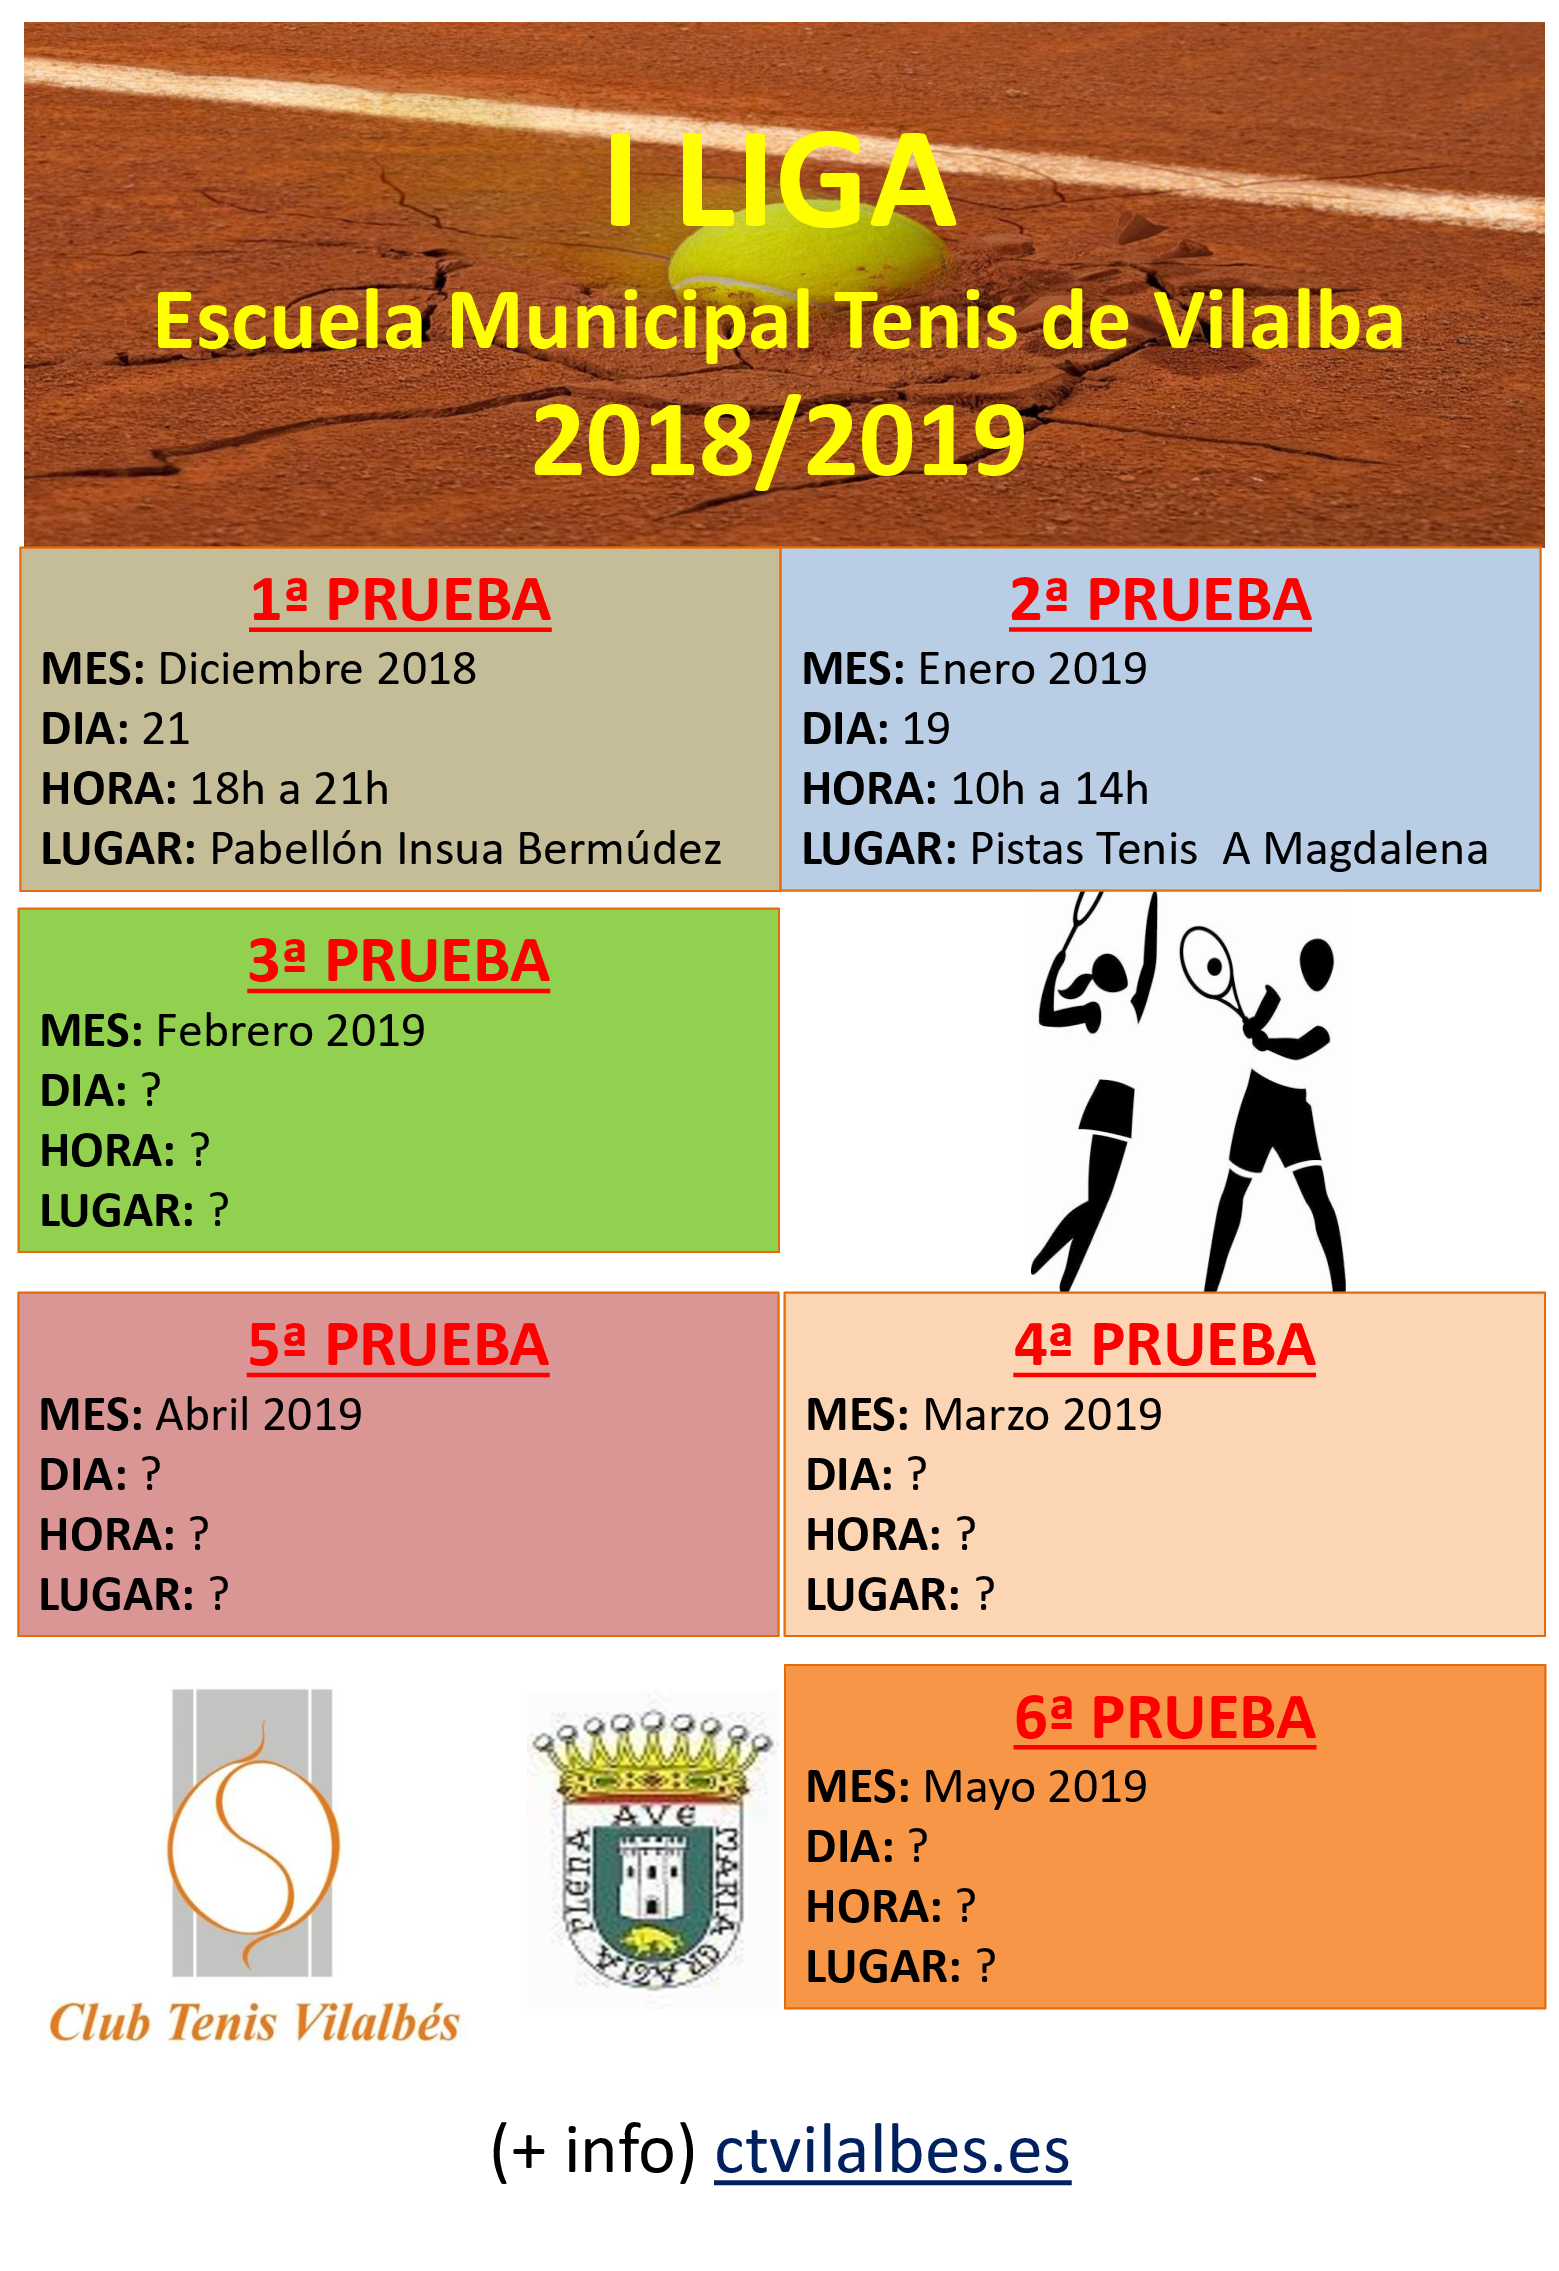 I LIGA - Escuela Municipal de Tenis 2018/2019